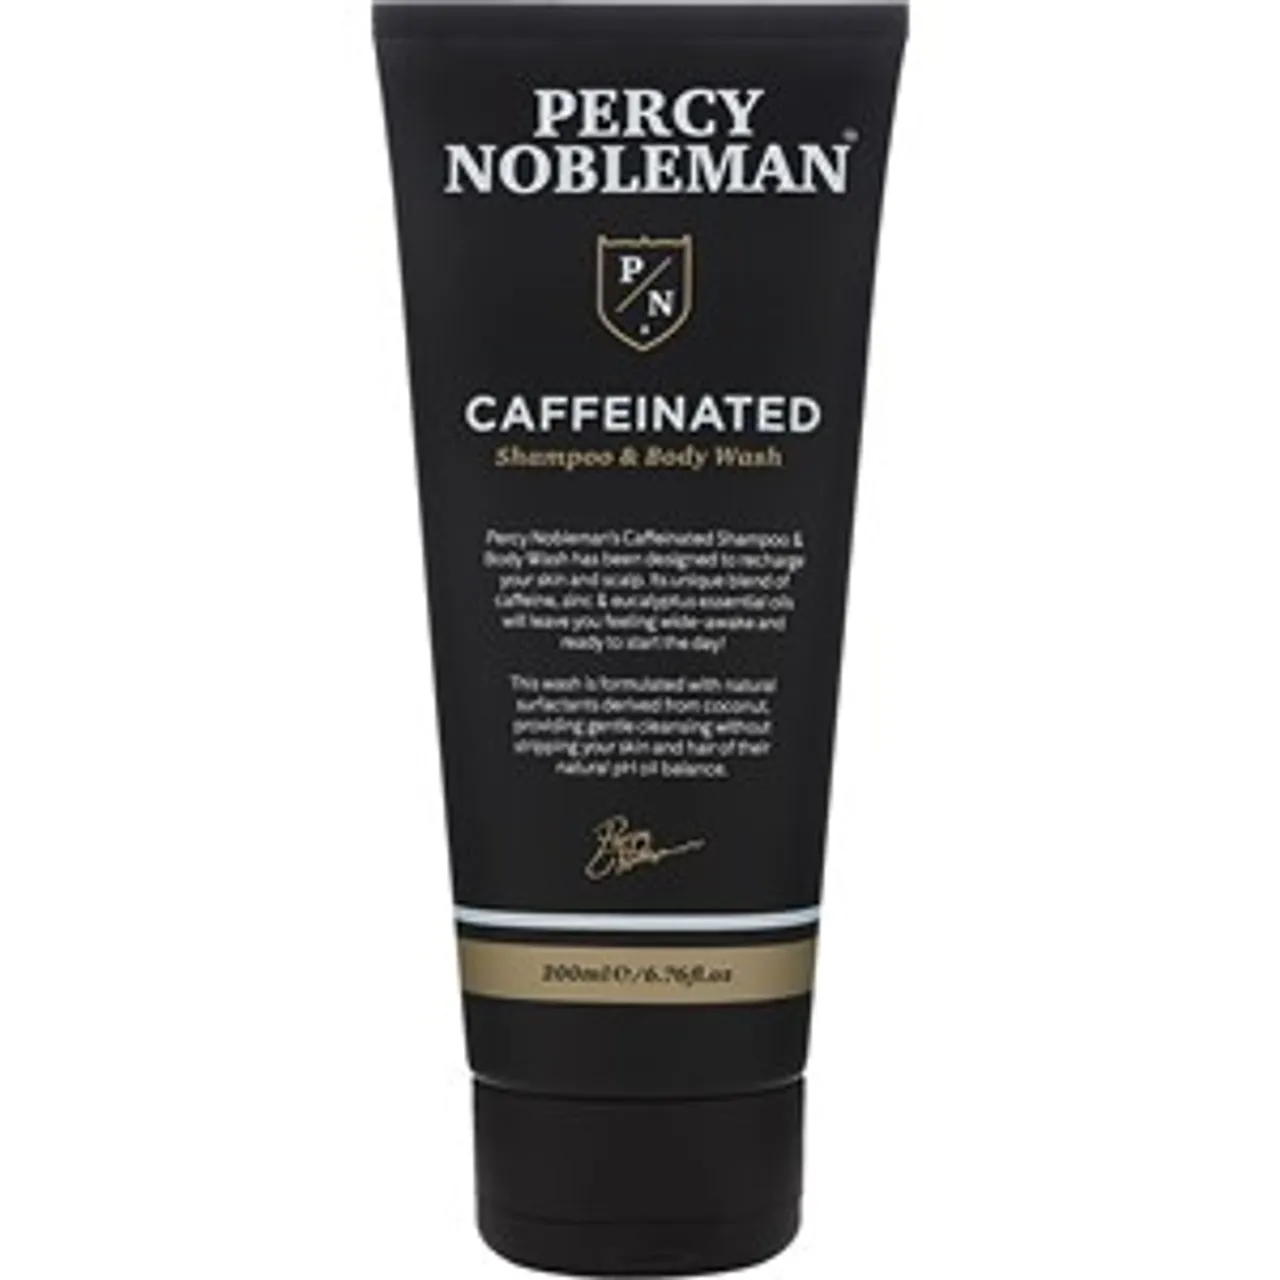 Percy Nobleman Caffeinated Shampoo & Body Wash Male 200 ml